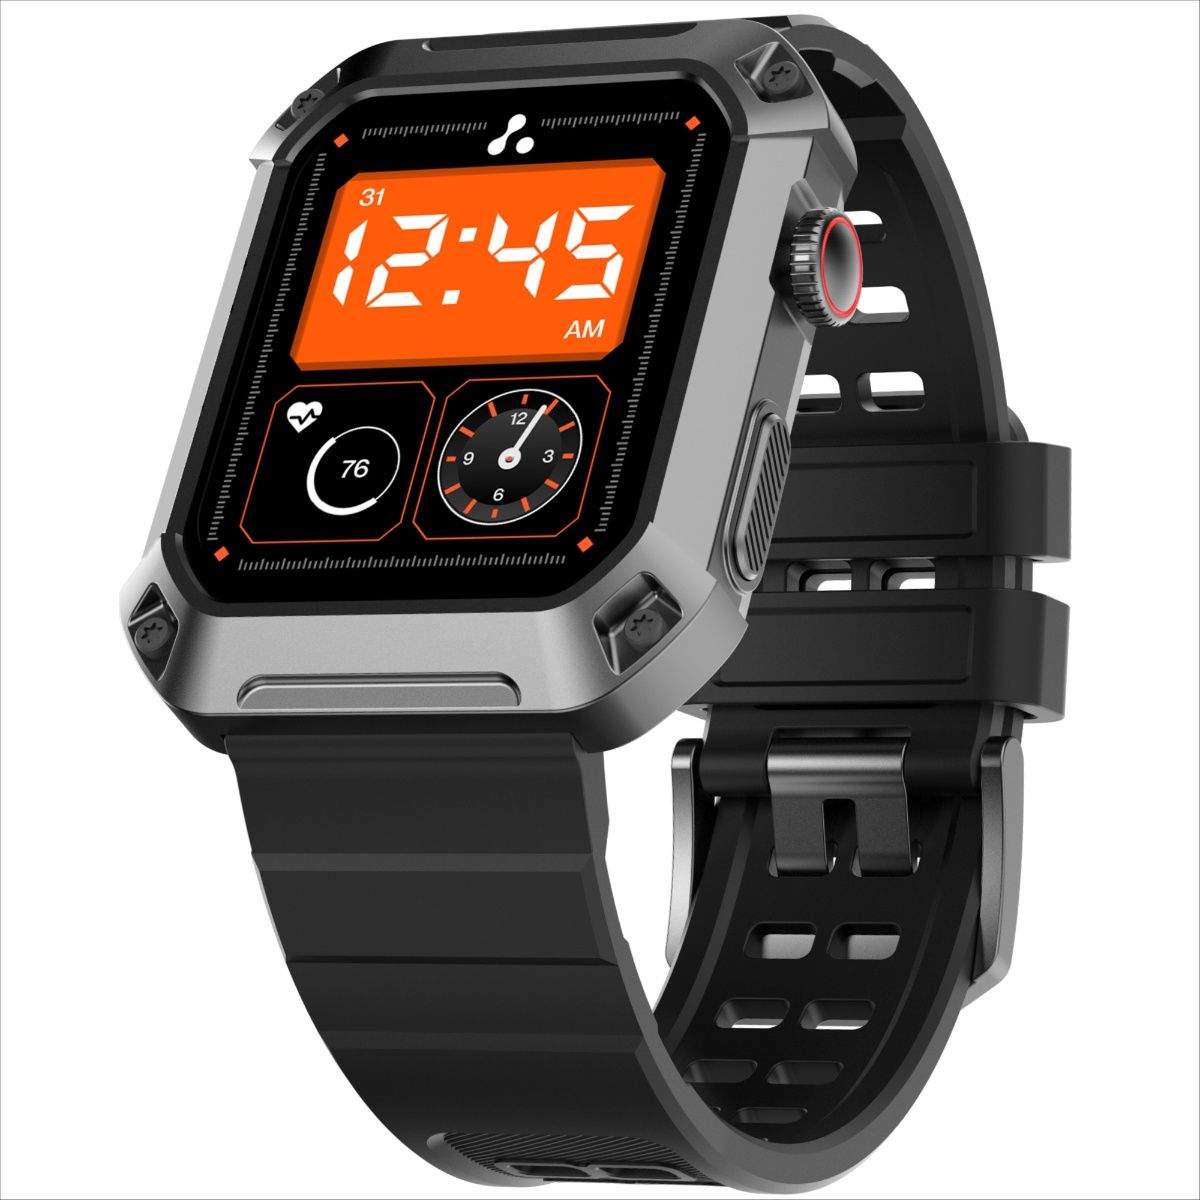 Ambrane FitShot Flex Smart Watch